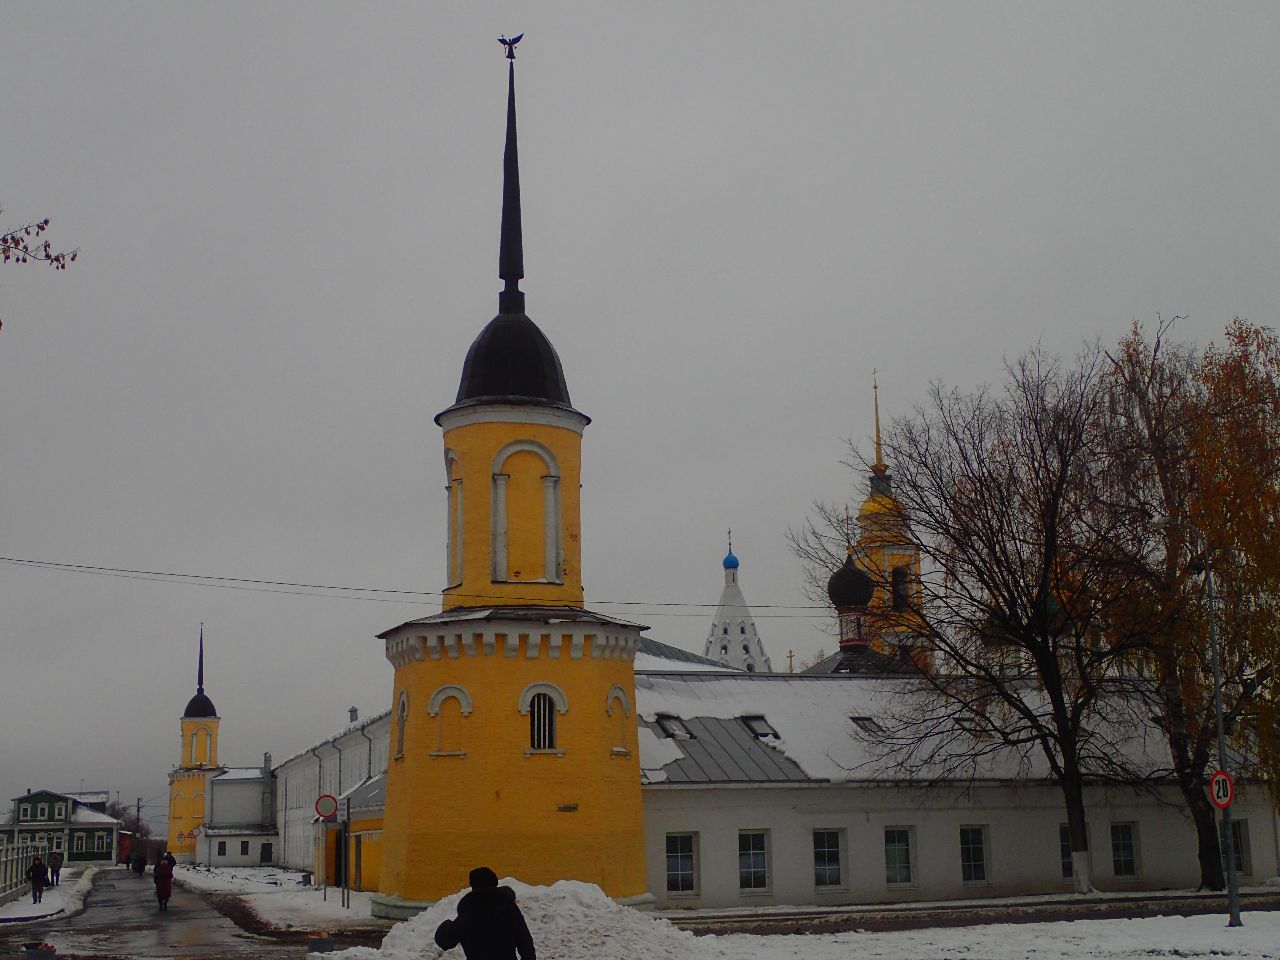 Коломенский Кремль-единственный в РФ, где внутри живут люди Коломна, Россия